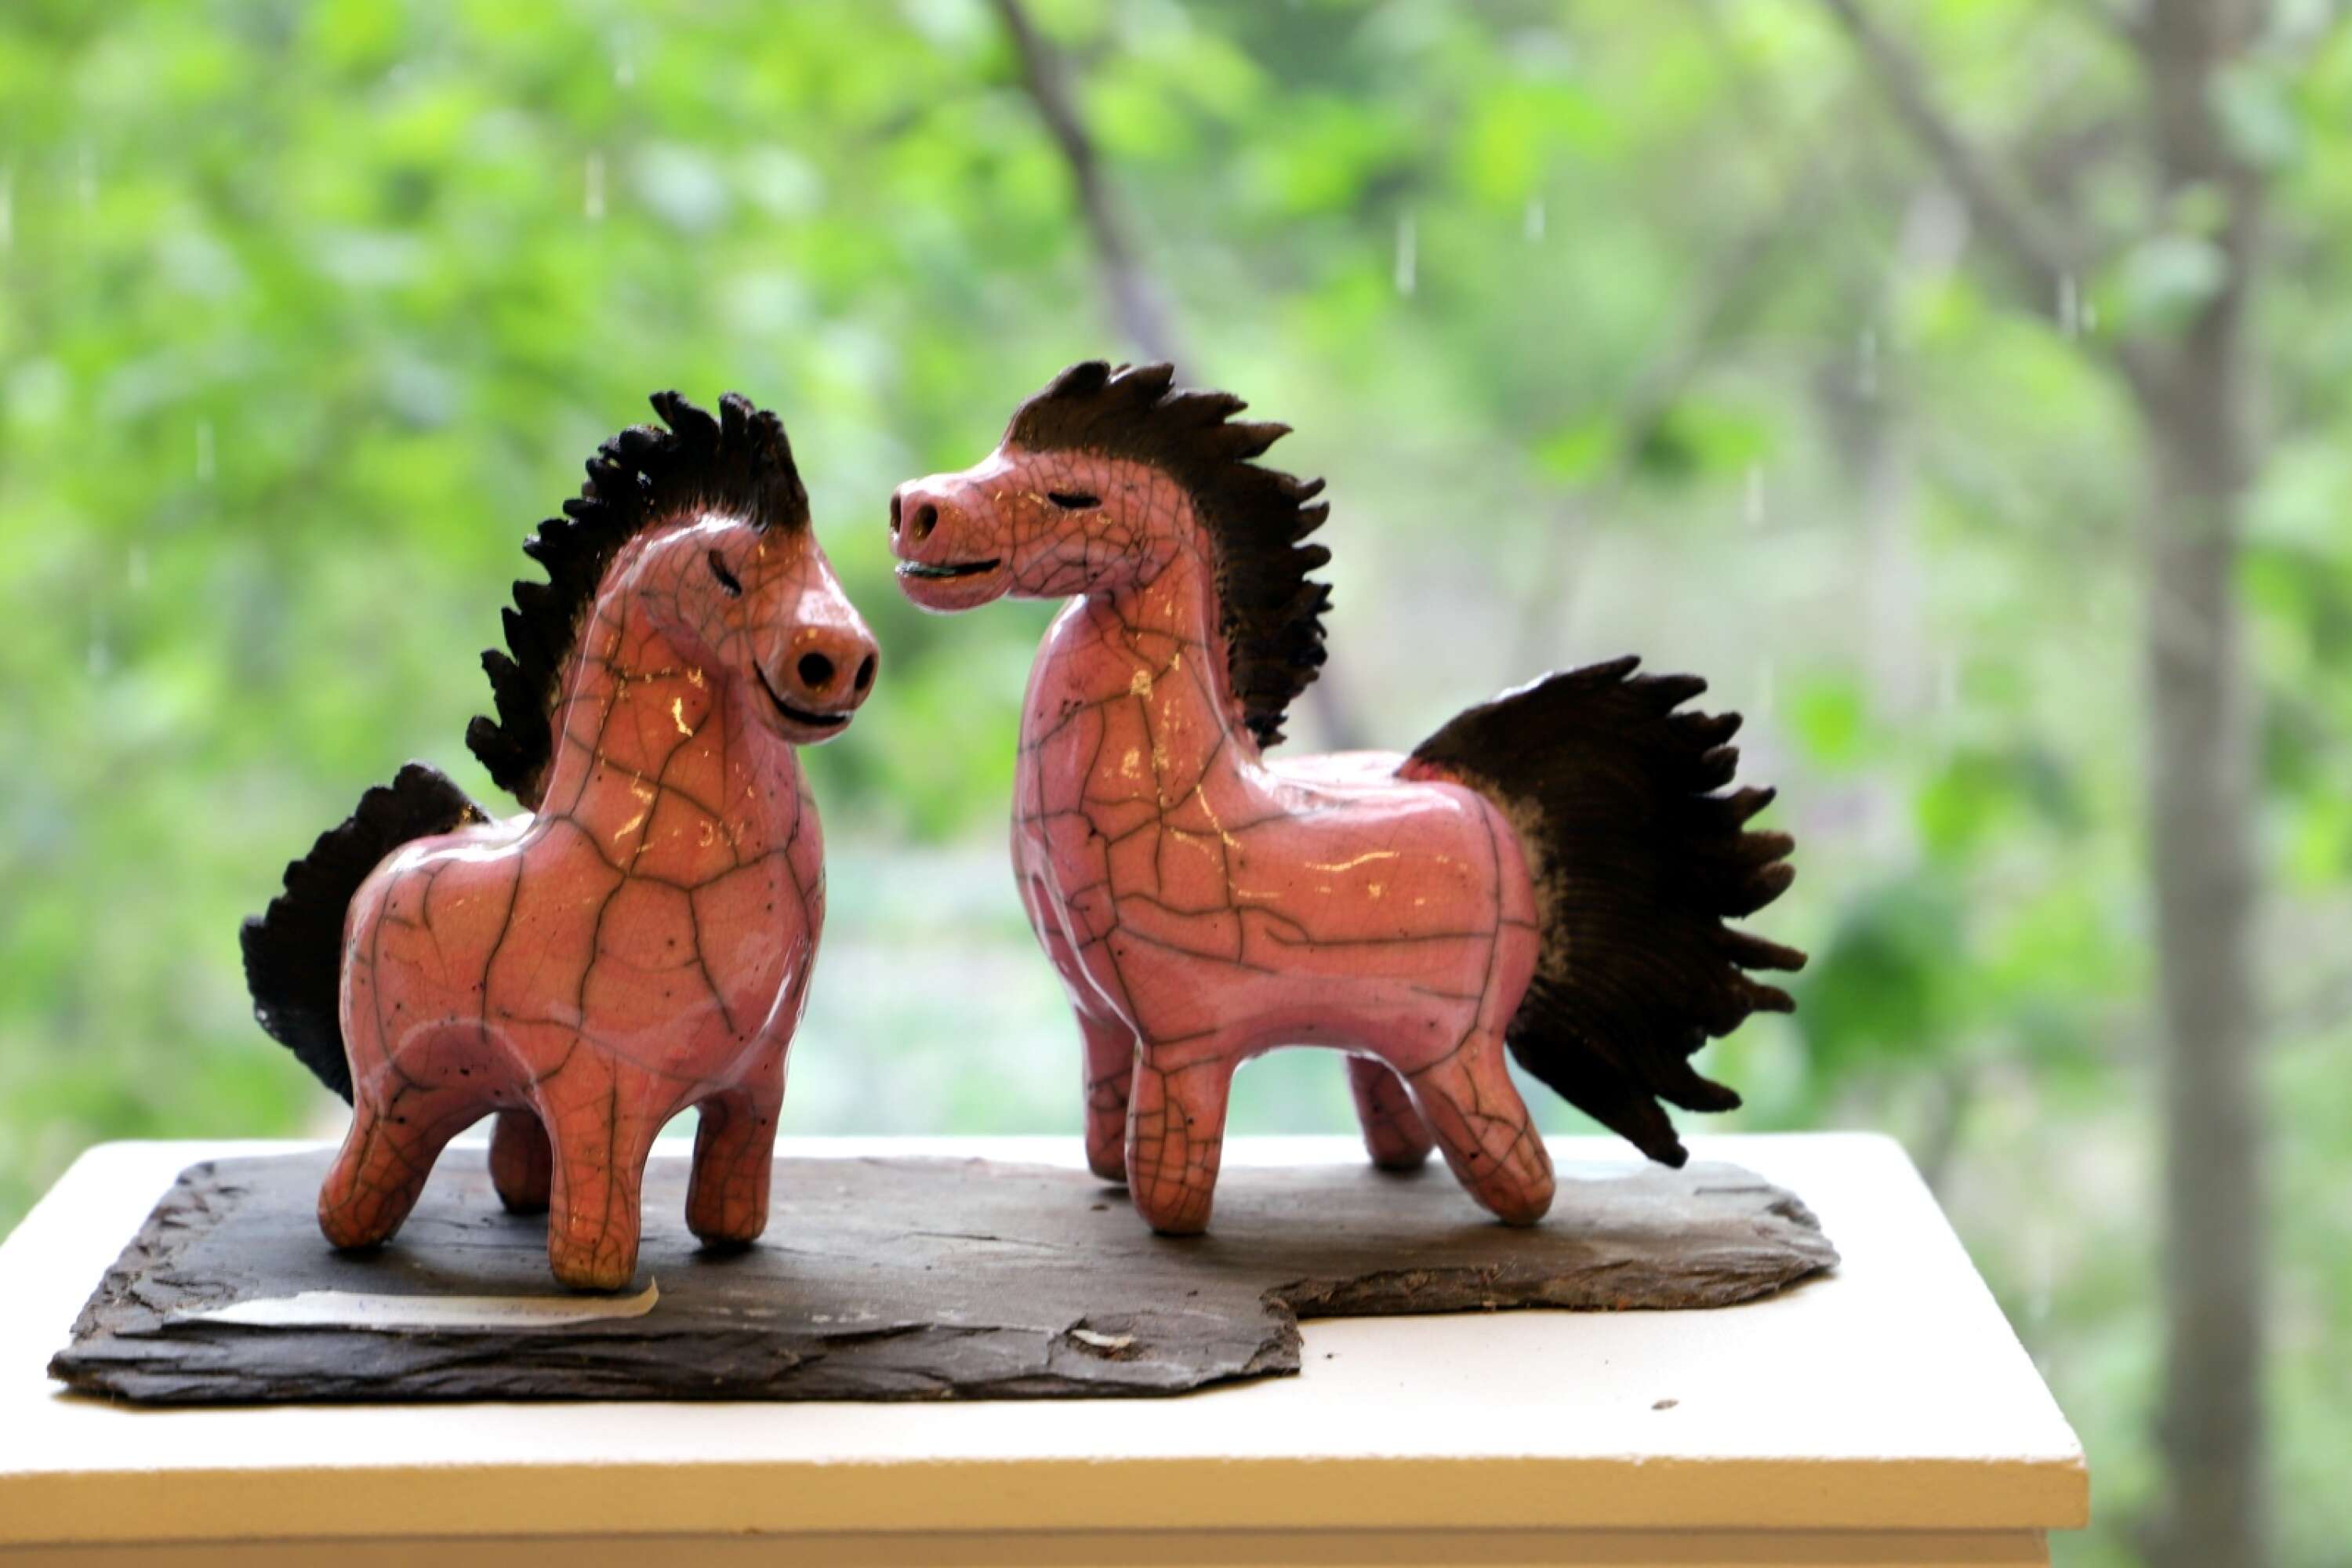 Rosa hästar i raku-keramik av Mia Jansson.